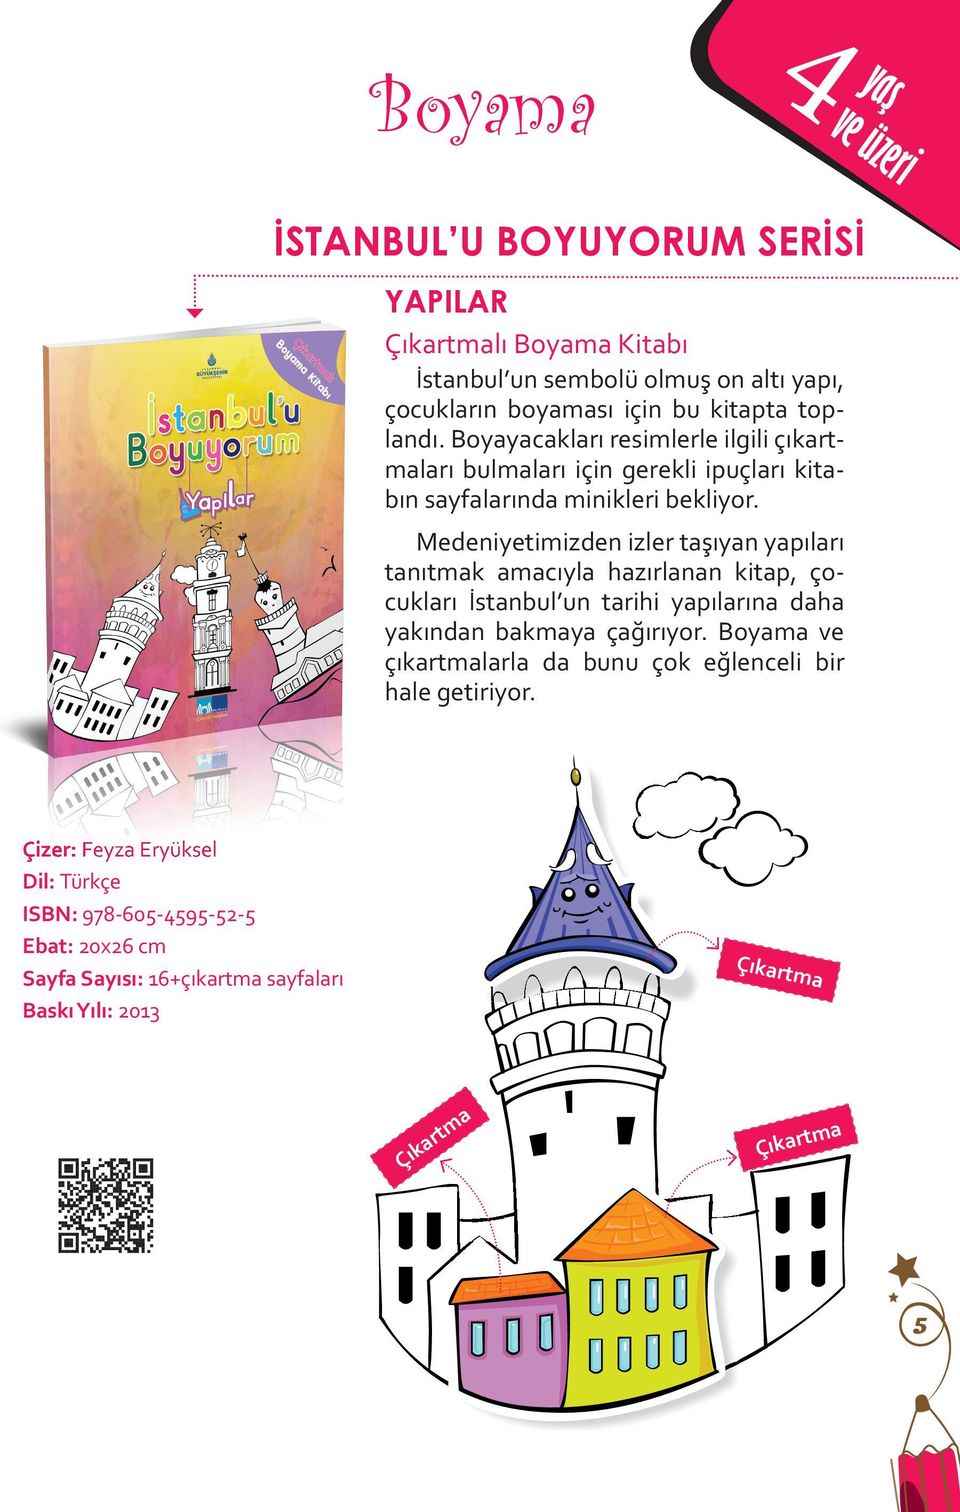 Medeniyetimizden izler taşıyan yapıları tanıtmak amacıyla hazırlanan kitap, çocukları İstanbul un tarihi yapılarına daha yakından bakmaya çağırıyor.